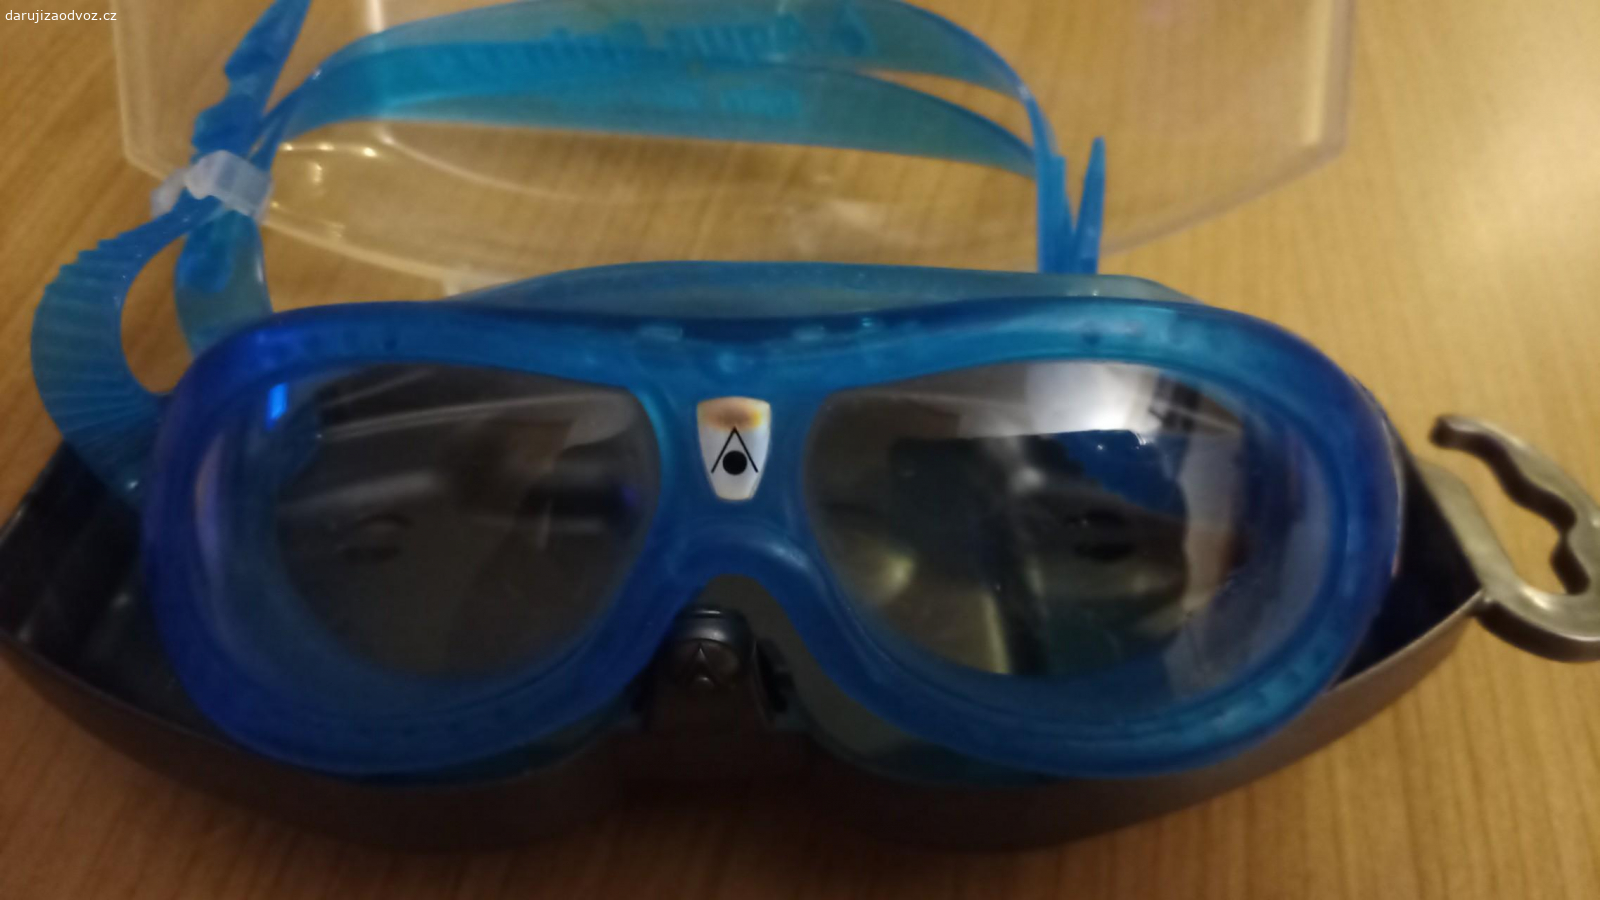 dětské plavecké brýle. Aqua sphere ... jsou to jediné brýle, které naší malé seděly (1,5 - 4 roky), na její malou makovičku..
zašlu